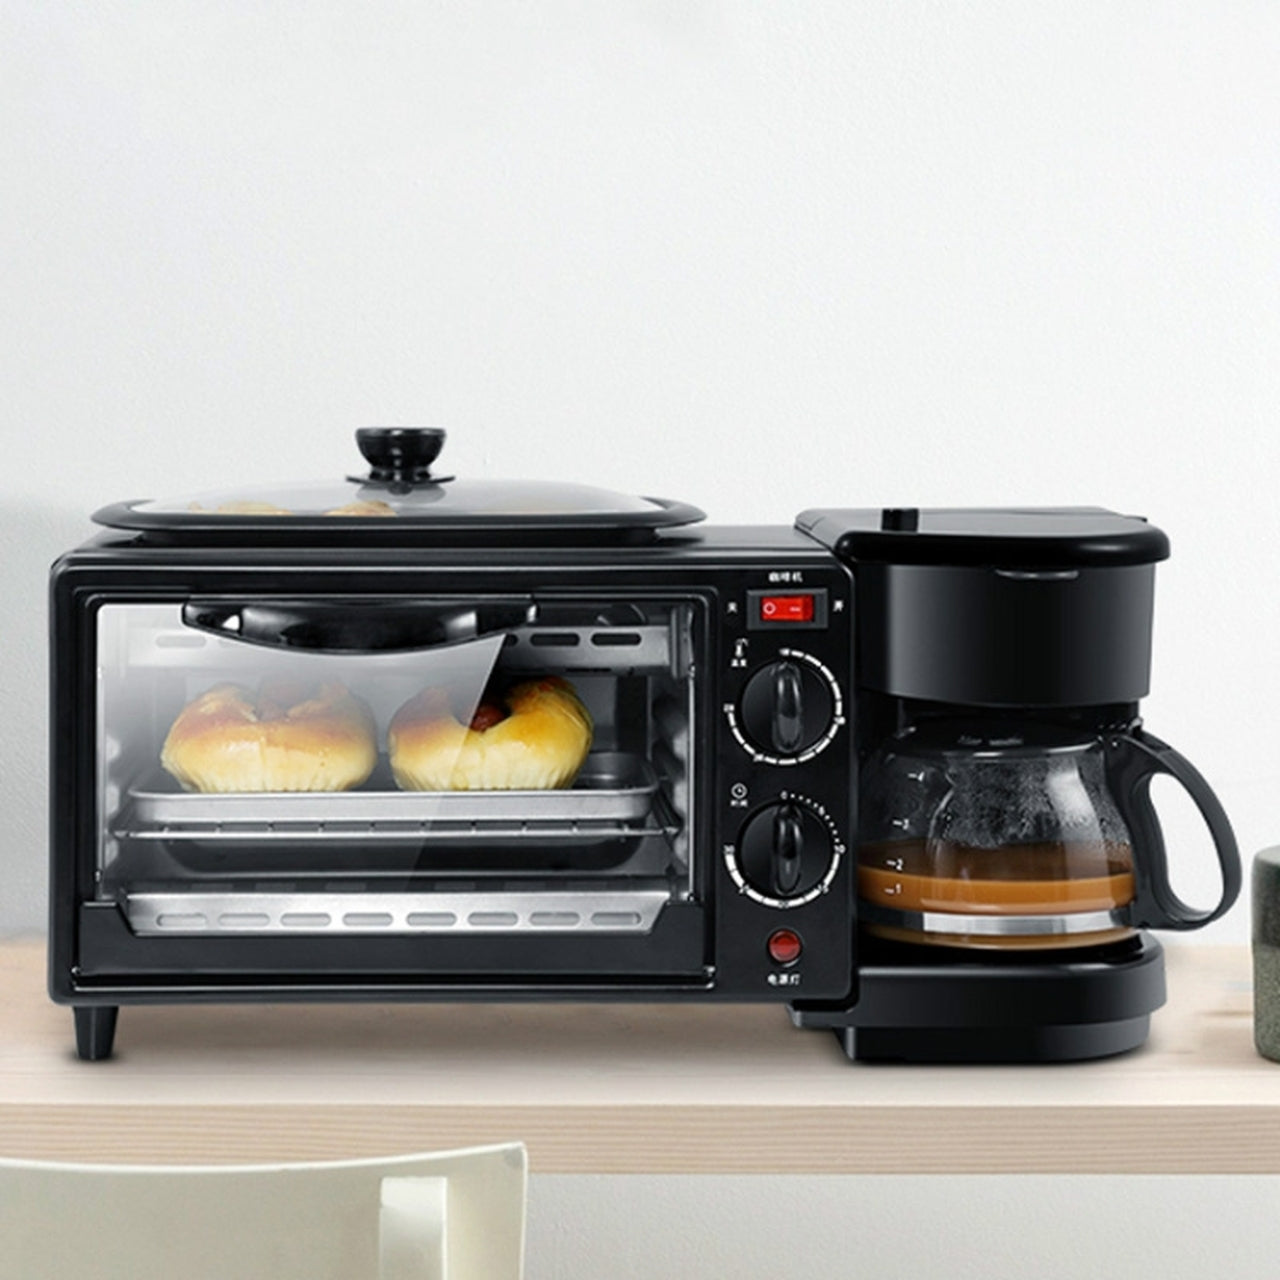 Microwave 3-in-1 Breakfast Maker 7L